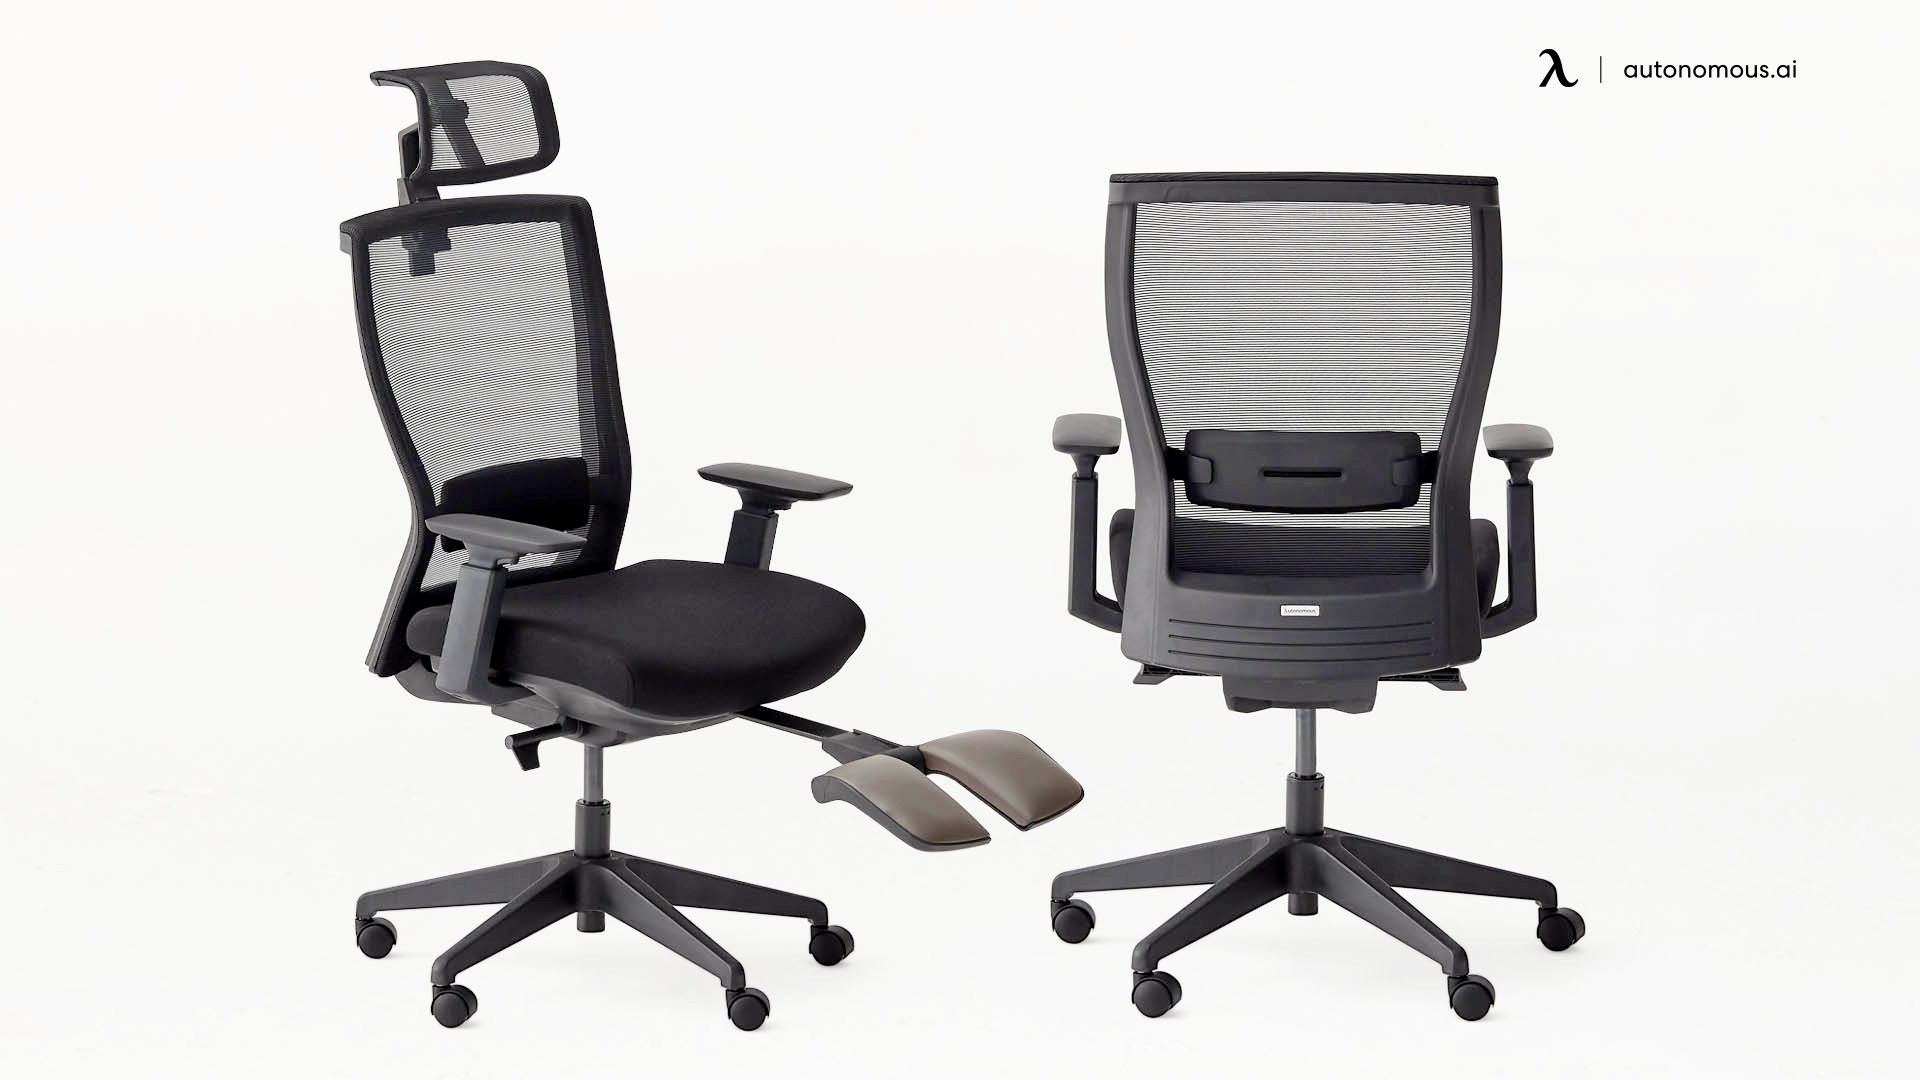 ErgoChair Recline petite office chair